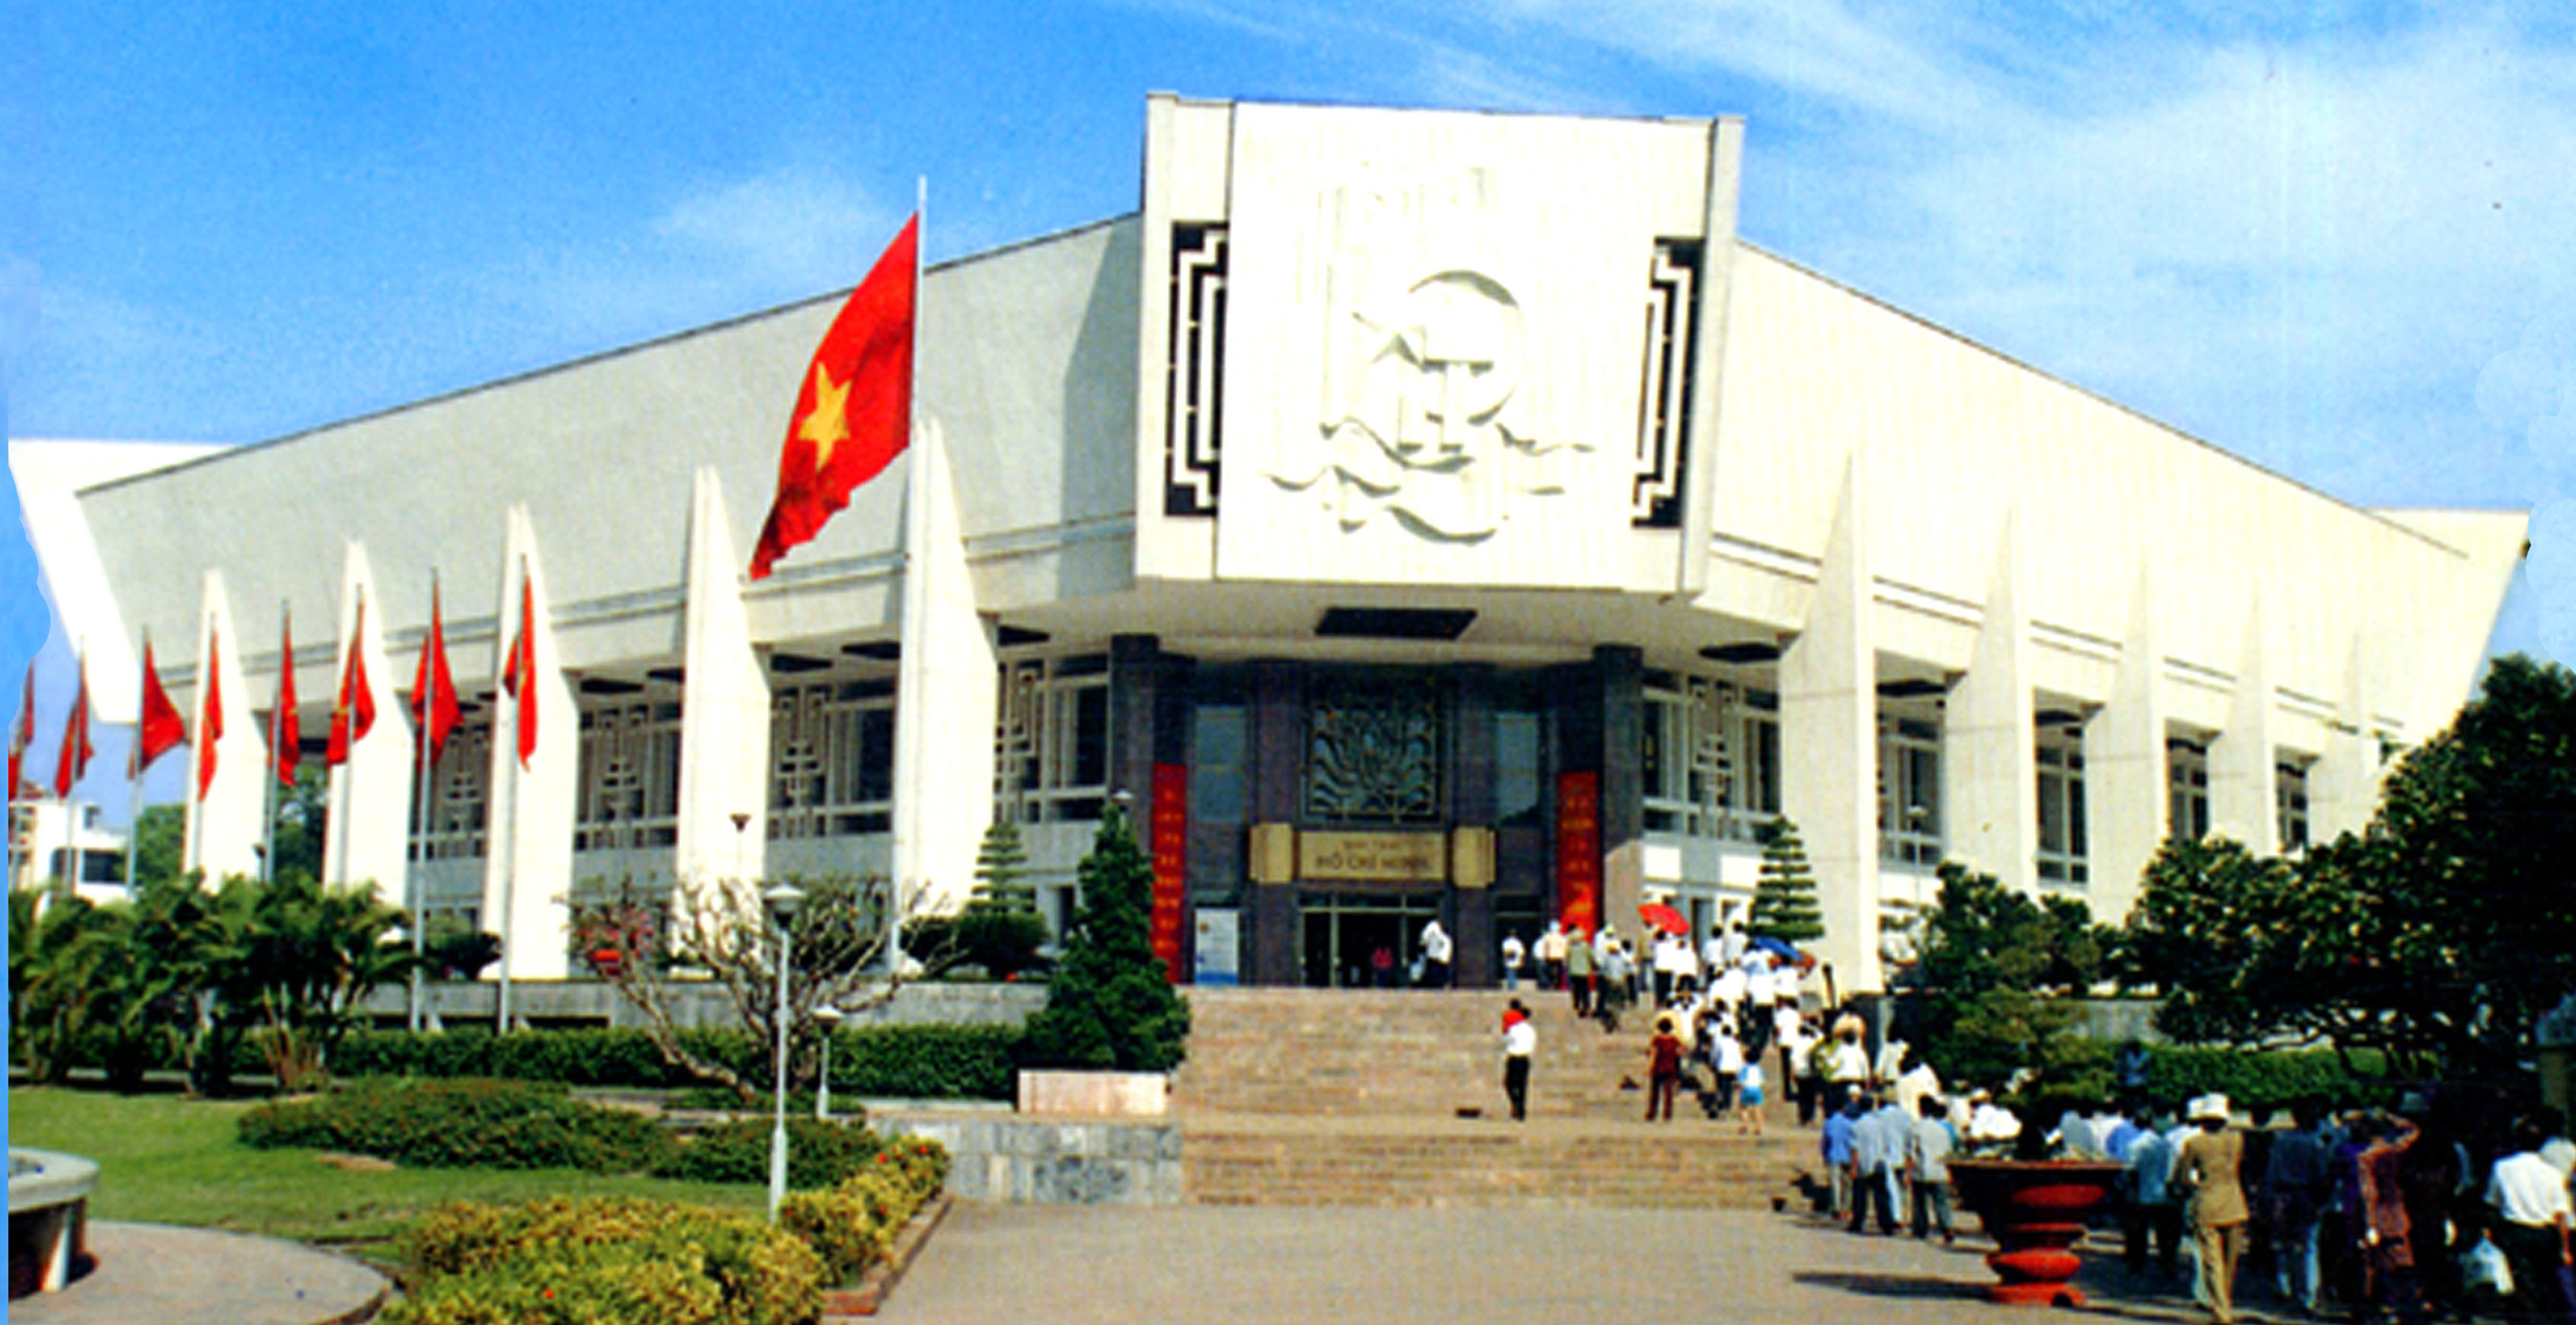 Khi viếng lăng Bác bạn cũng nên tham quan bảo tàng Hồ Chí Minh, là nơi lưu giữ nhiều tư liệu quý về Bác.